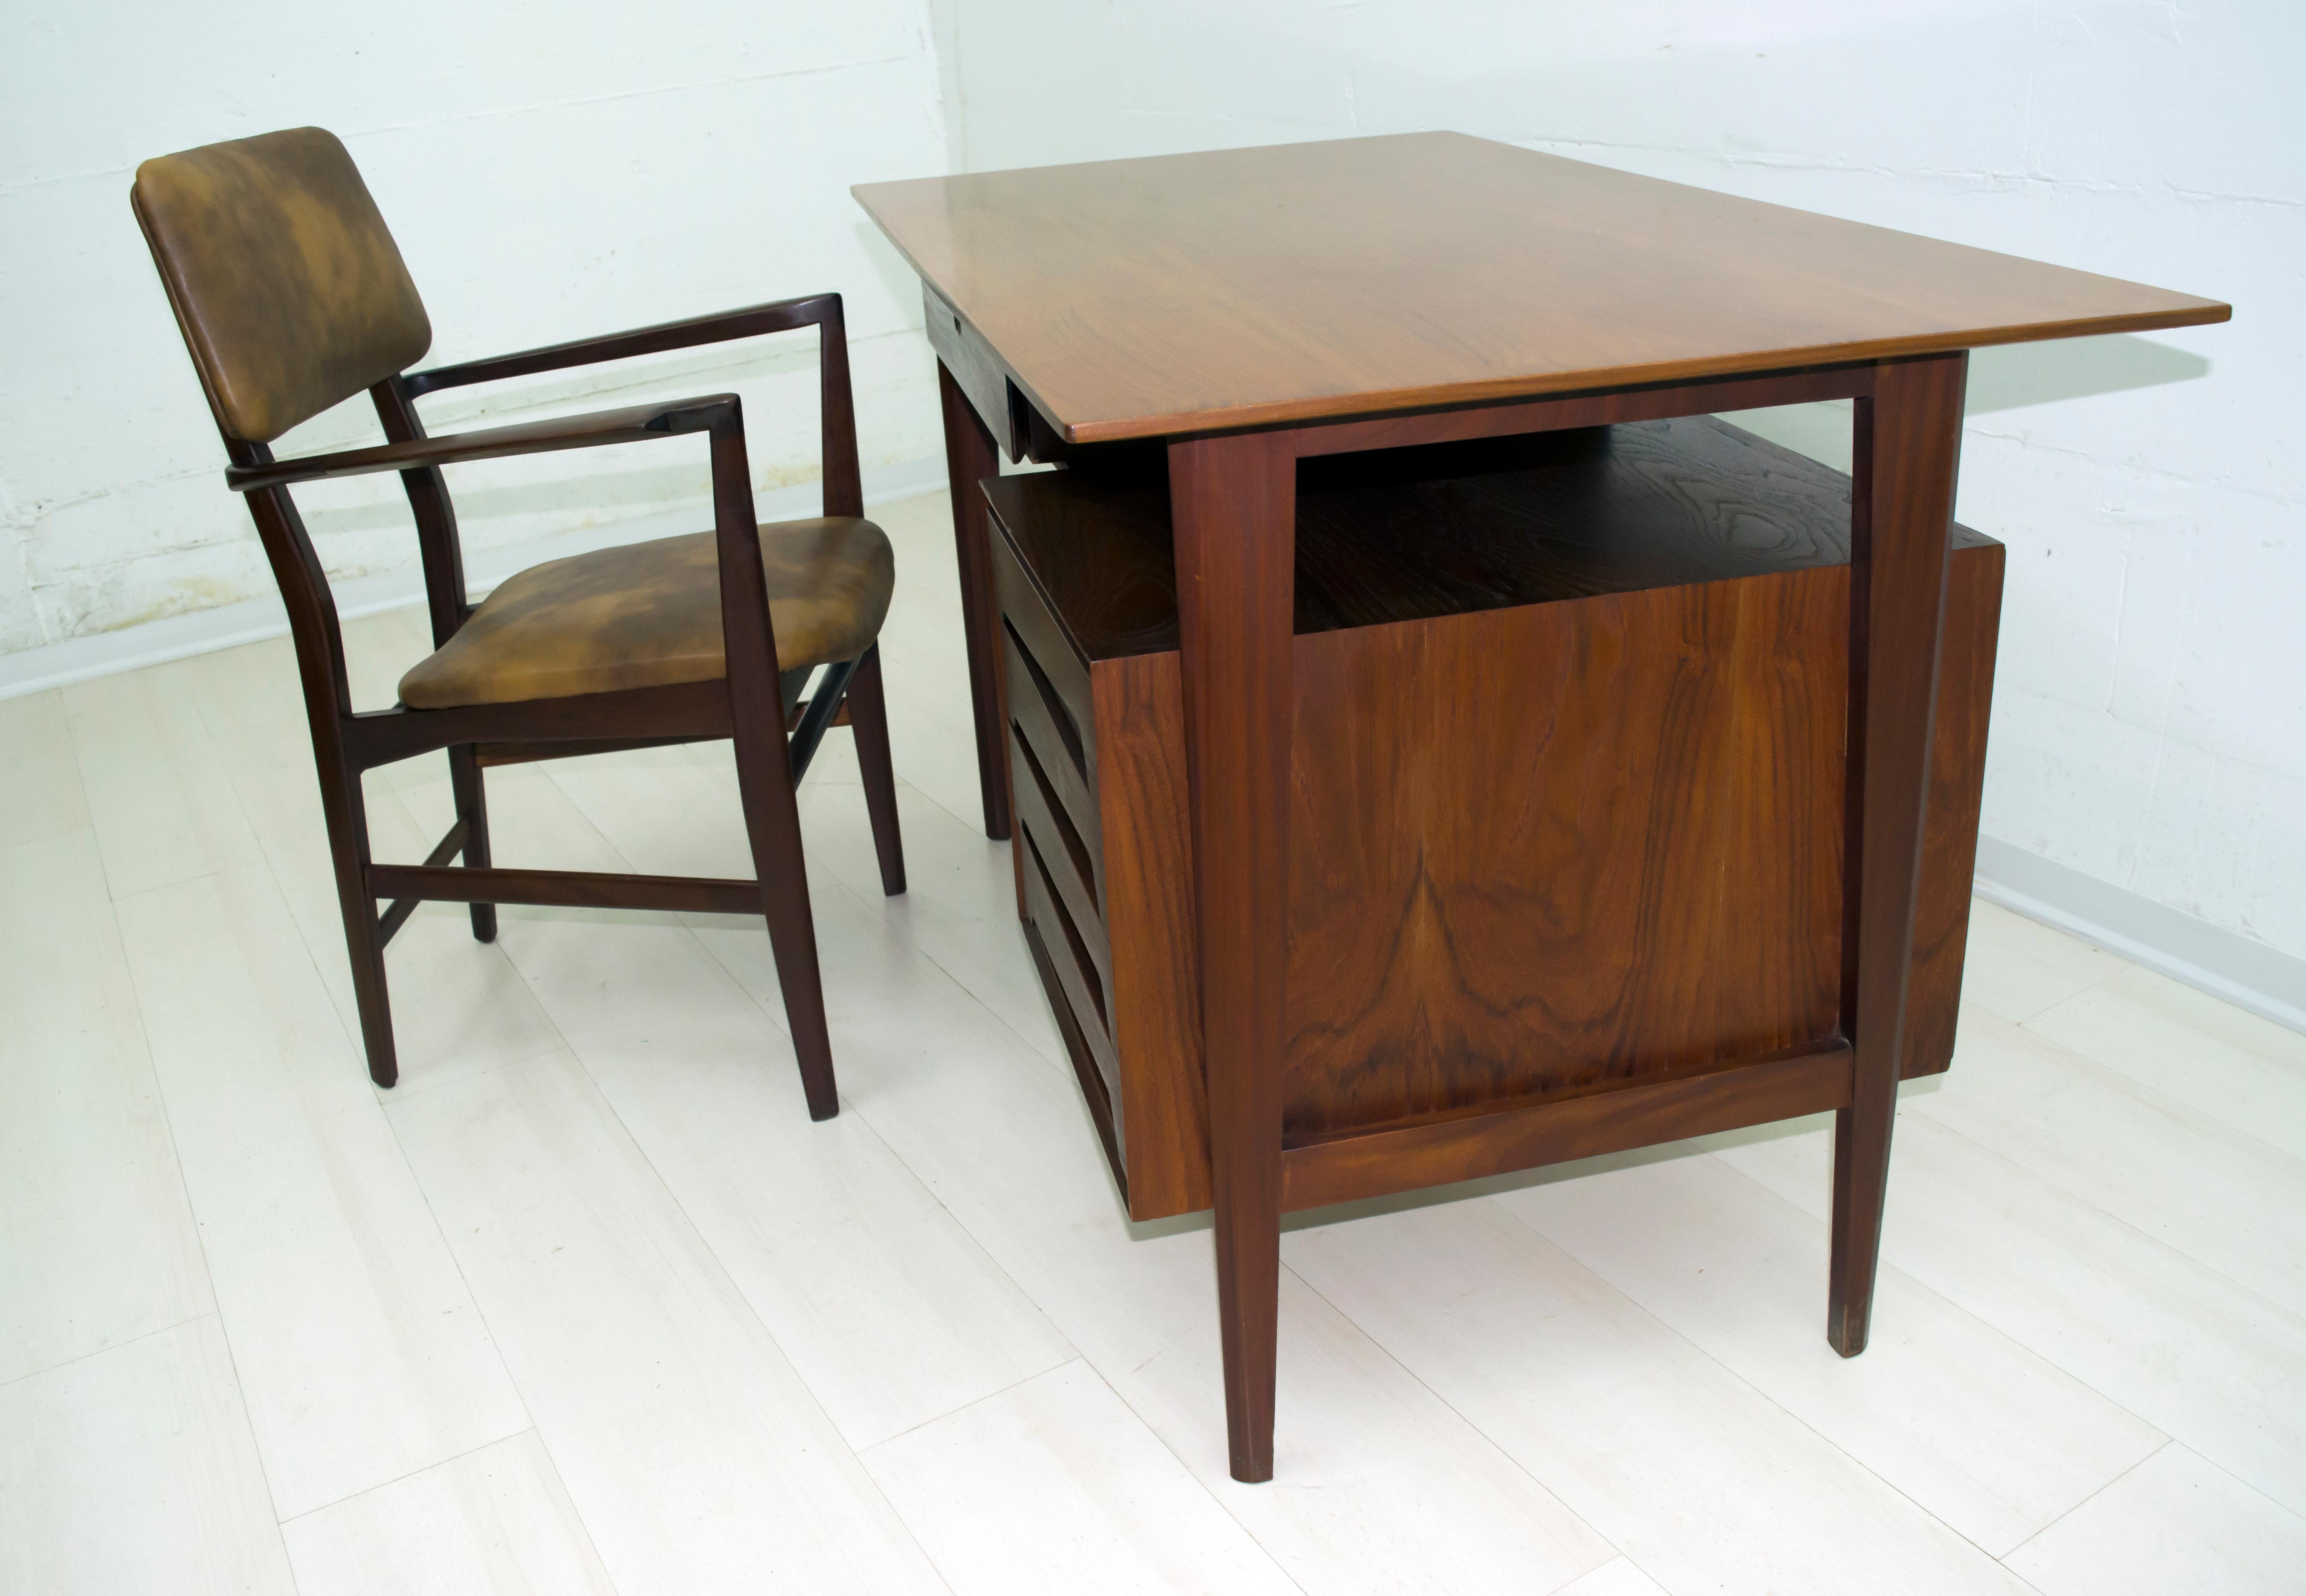 Ce bureau et sa chaise ont été conçus par le célèbre designer italien Vittorio Dassi, en utilisant du bois de teck, Italie, années 1950.

Les mesures indiquées sont celles du bureau uniquement, tandis que celles de la chaise uniquement sont les